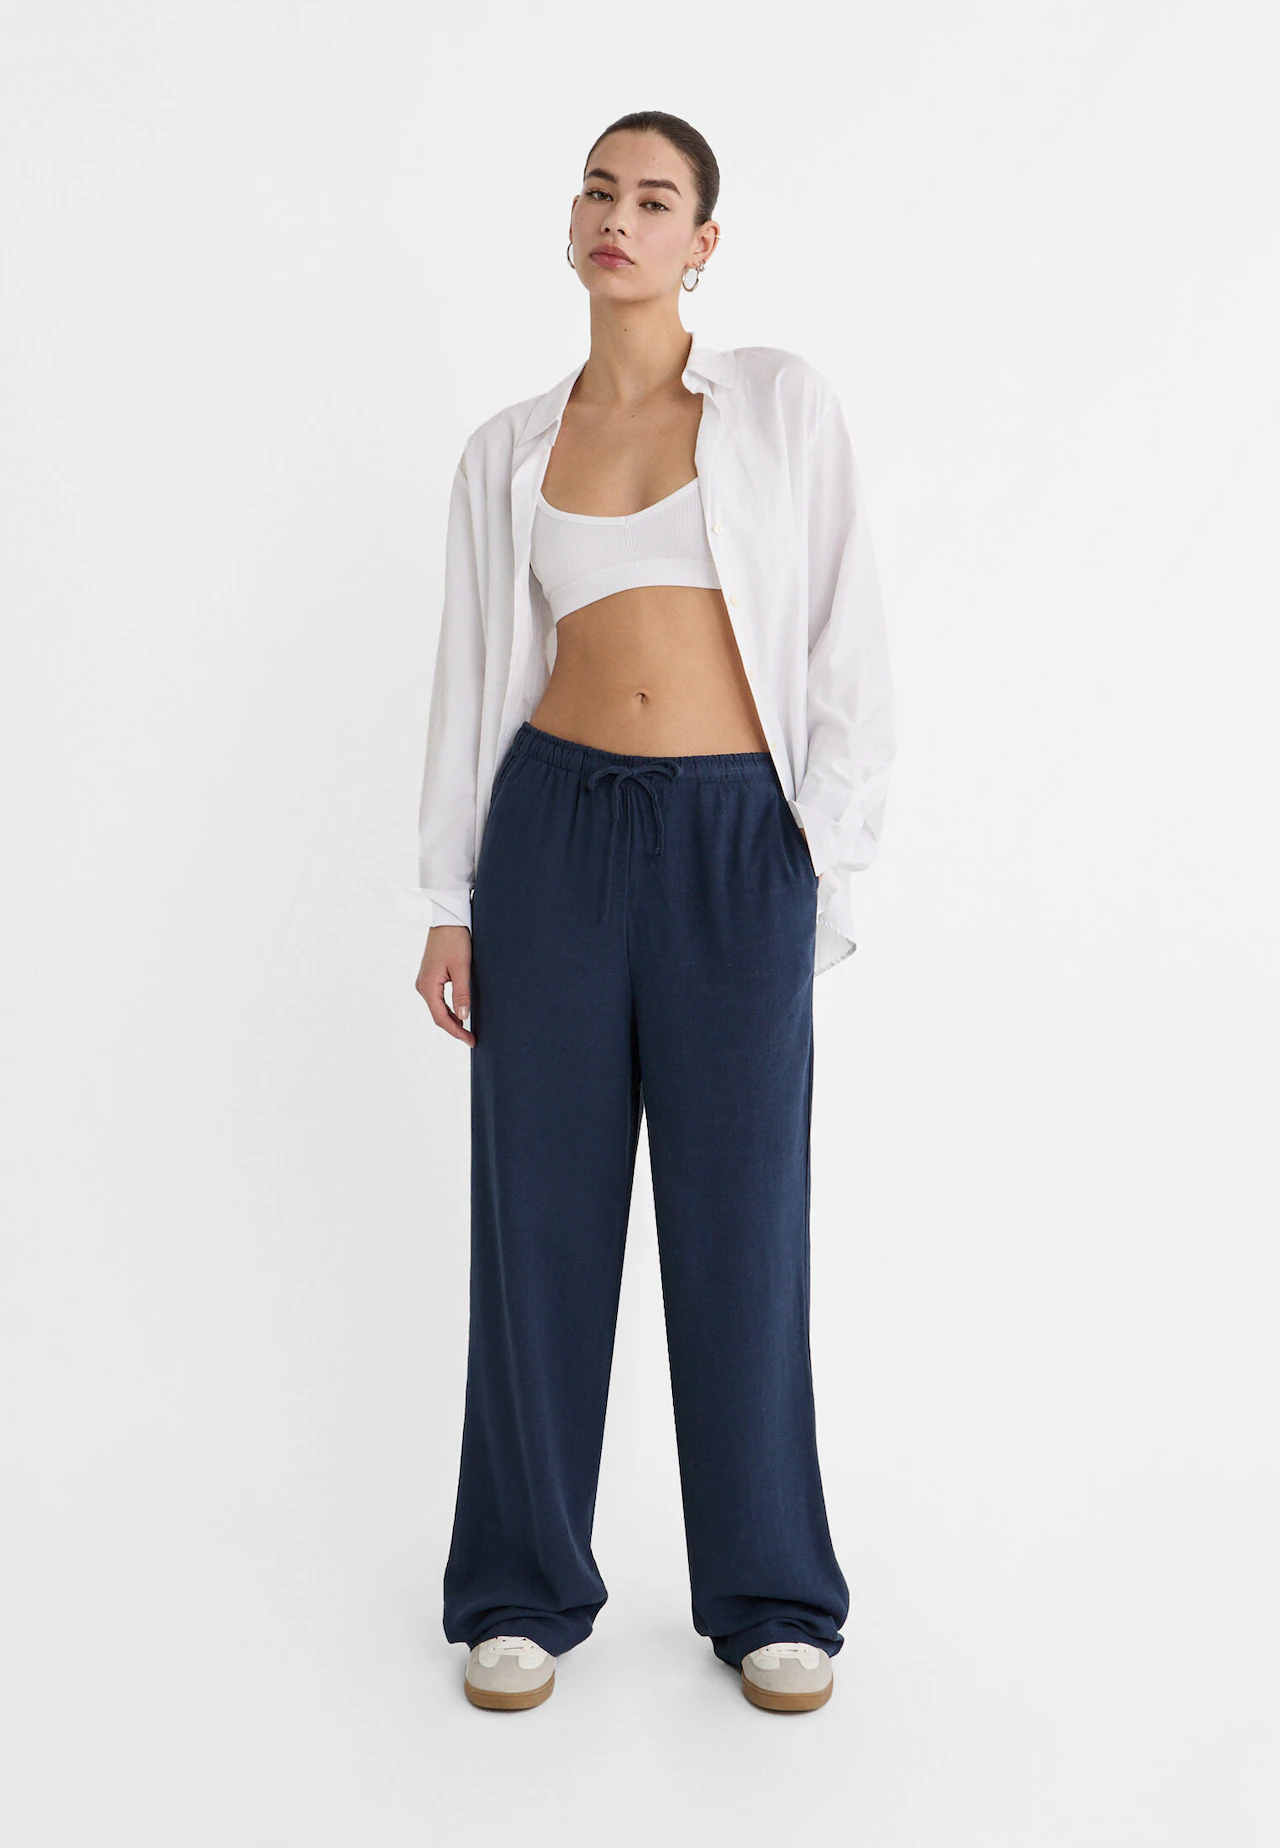 Pantalón fluido tipo pijama con cintura elástica y bolsillos